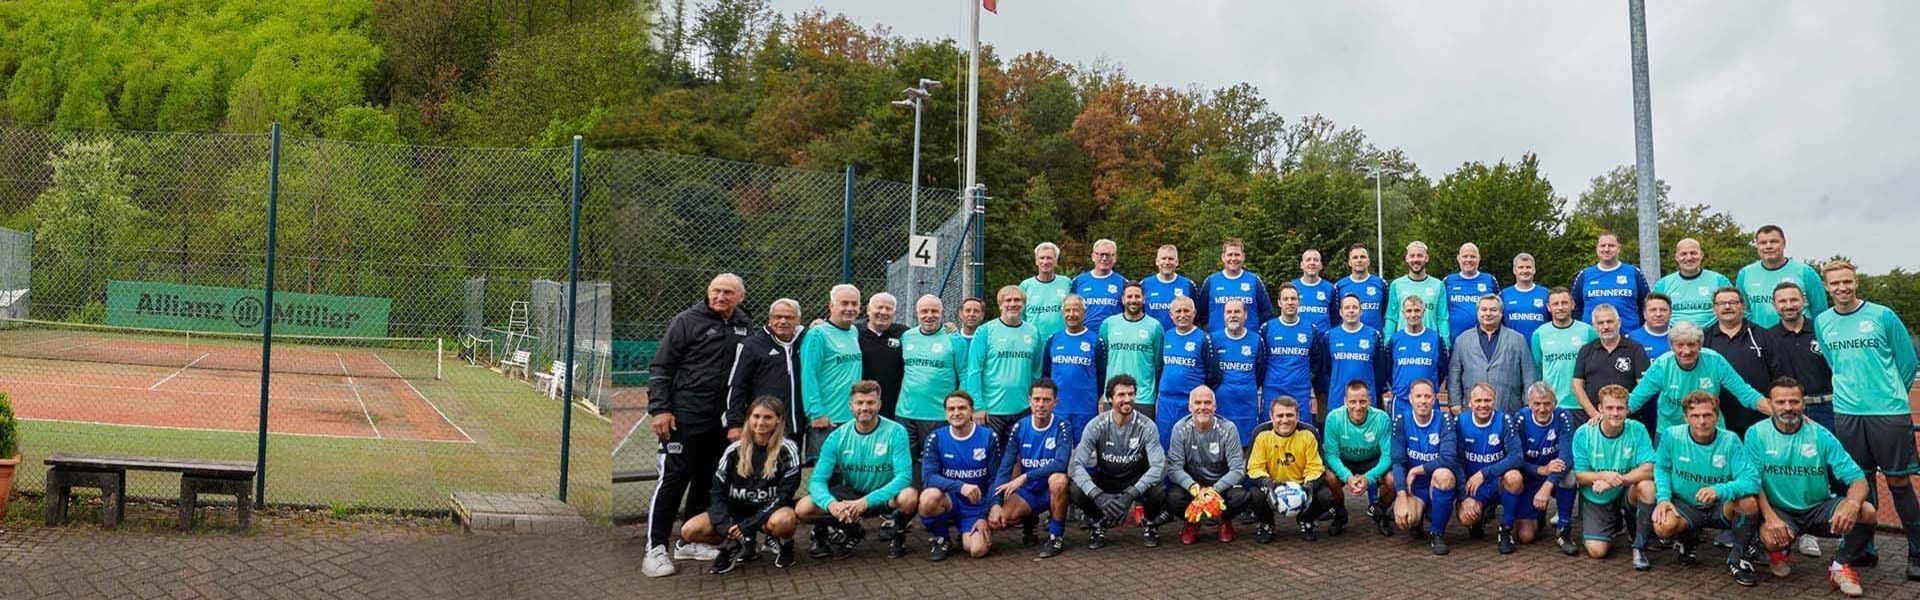 Eine Gruppenaufnahme zweier Fußballmannschaften in blauen und türkisen Trikots 